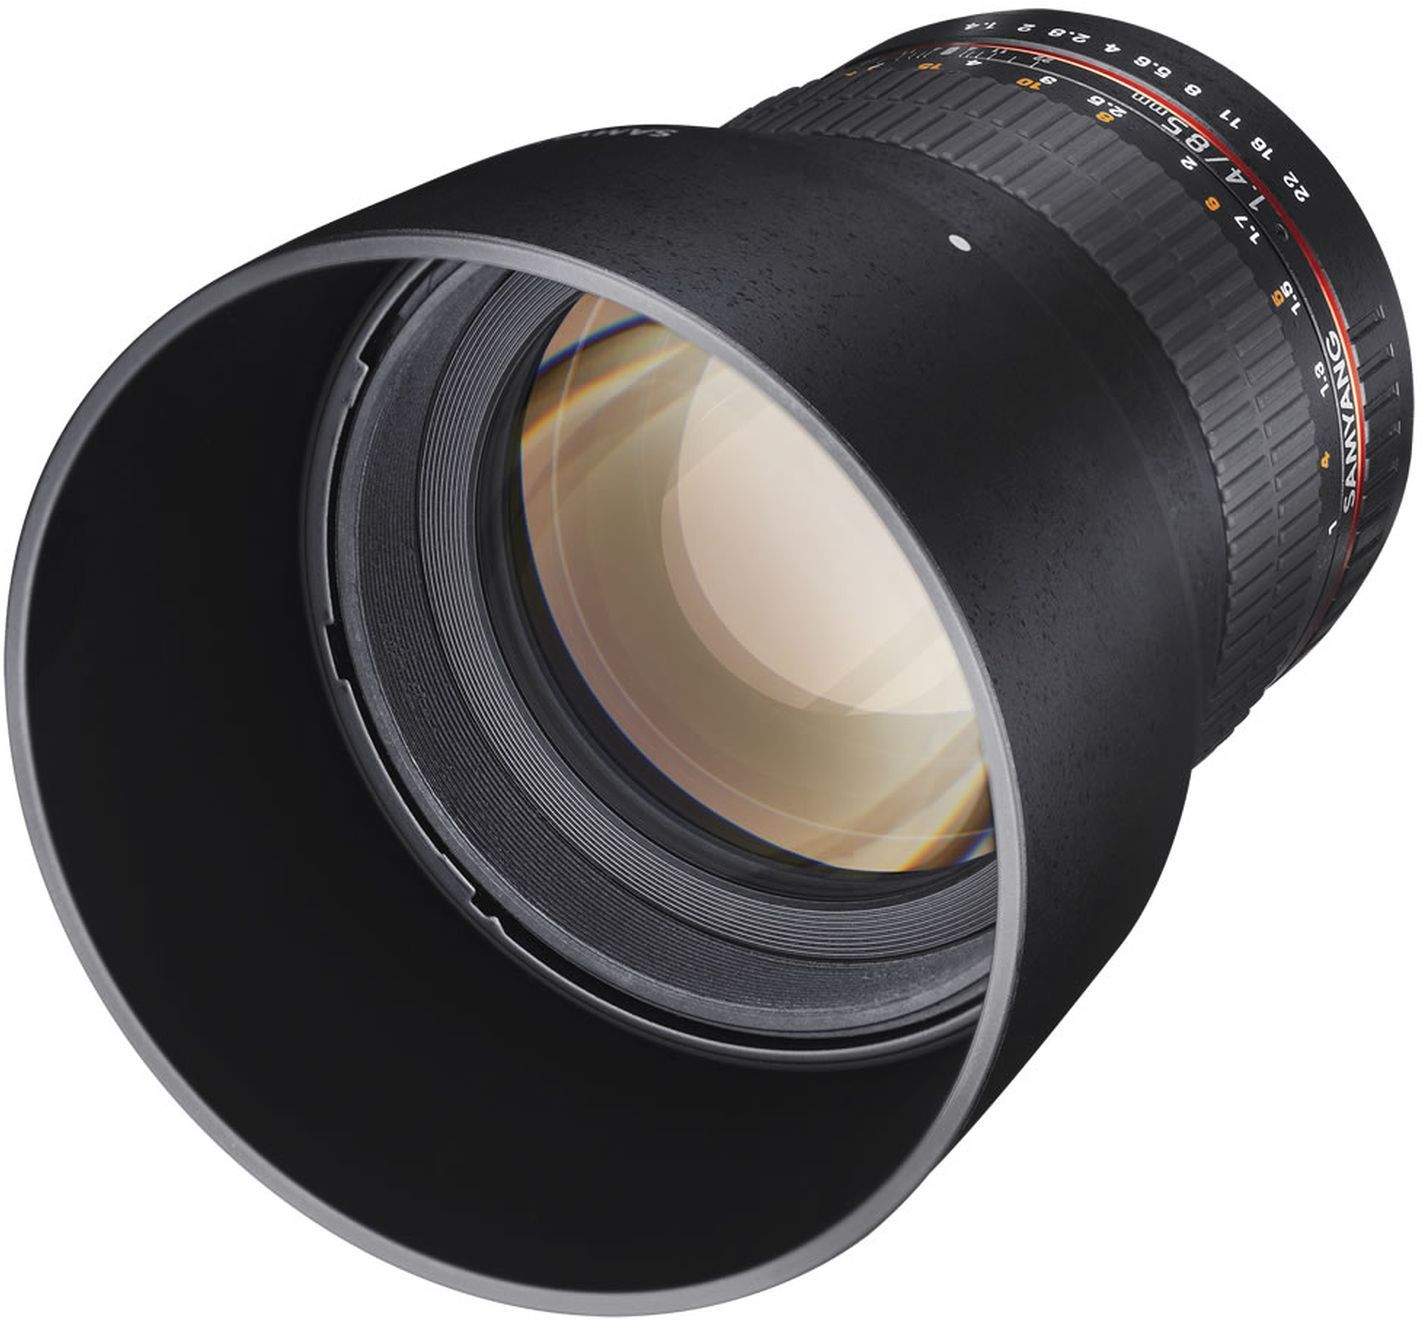 Samyang 85mm F1.4 UMC II MFT Full Frame Camera Lens